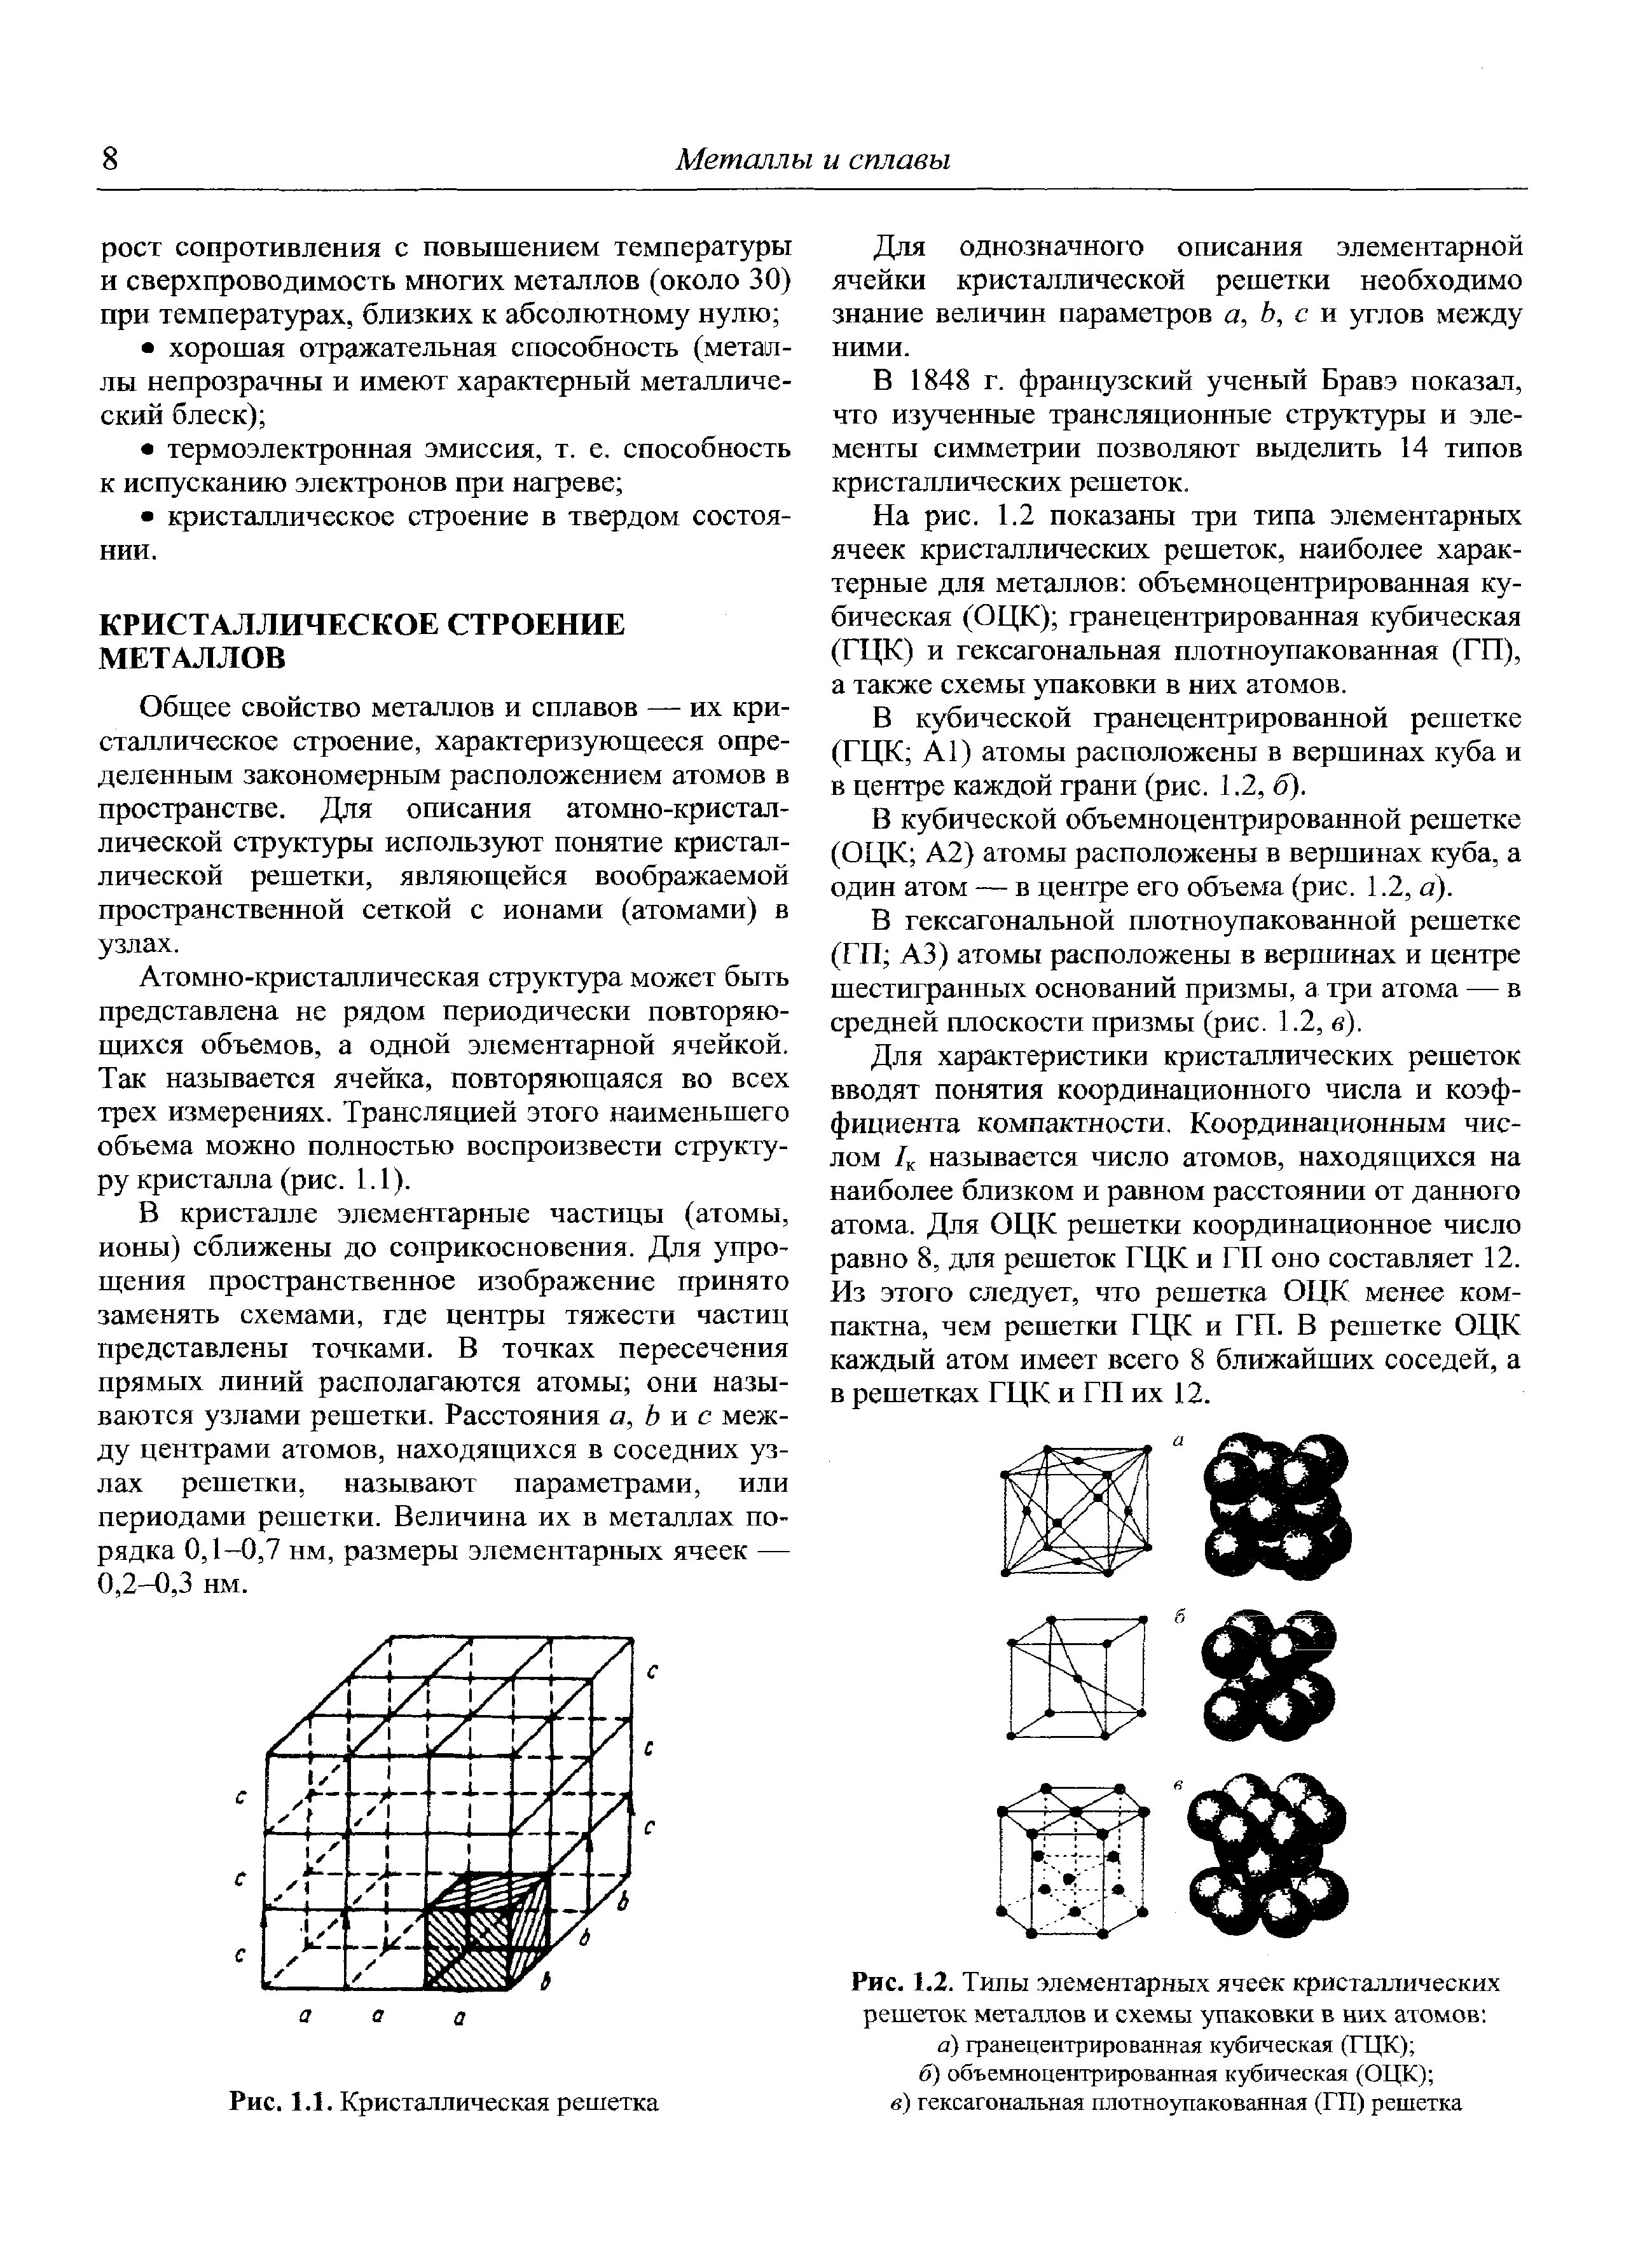 Рис. 1.2. Типы элементарных ячеек кристаллических решеток металлов и схемы упаковки в них атомов а) гранецентрированная кубическая (ГЦК) б) объемноцентрированная кубическая (ОЦК) 
